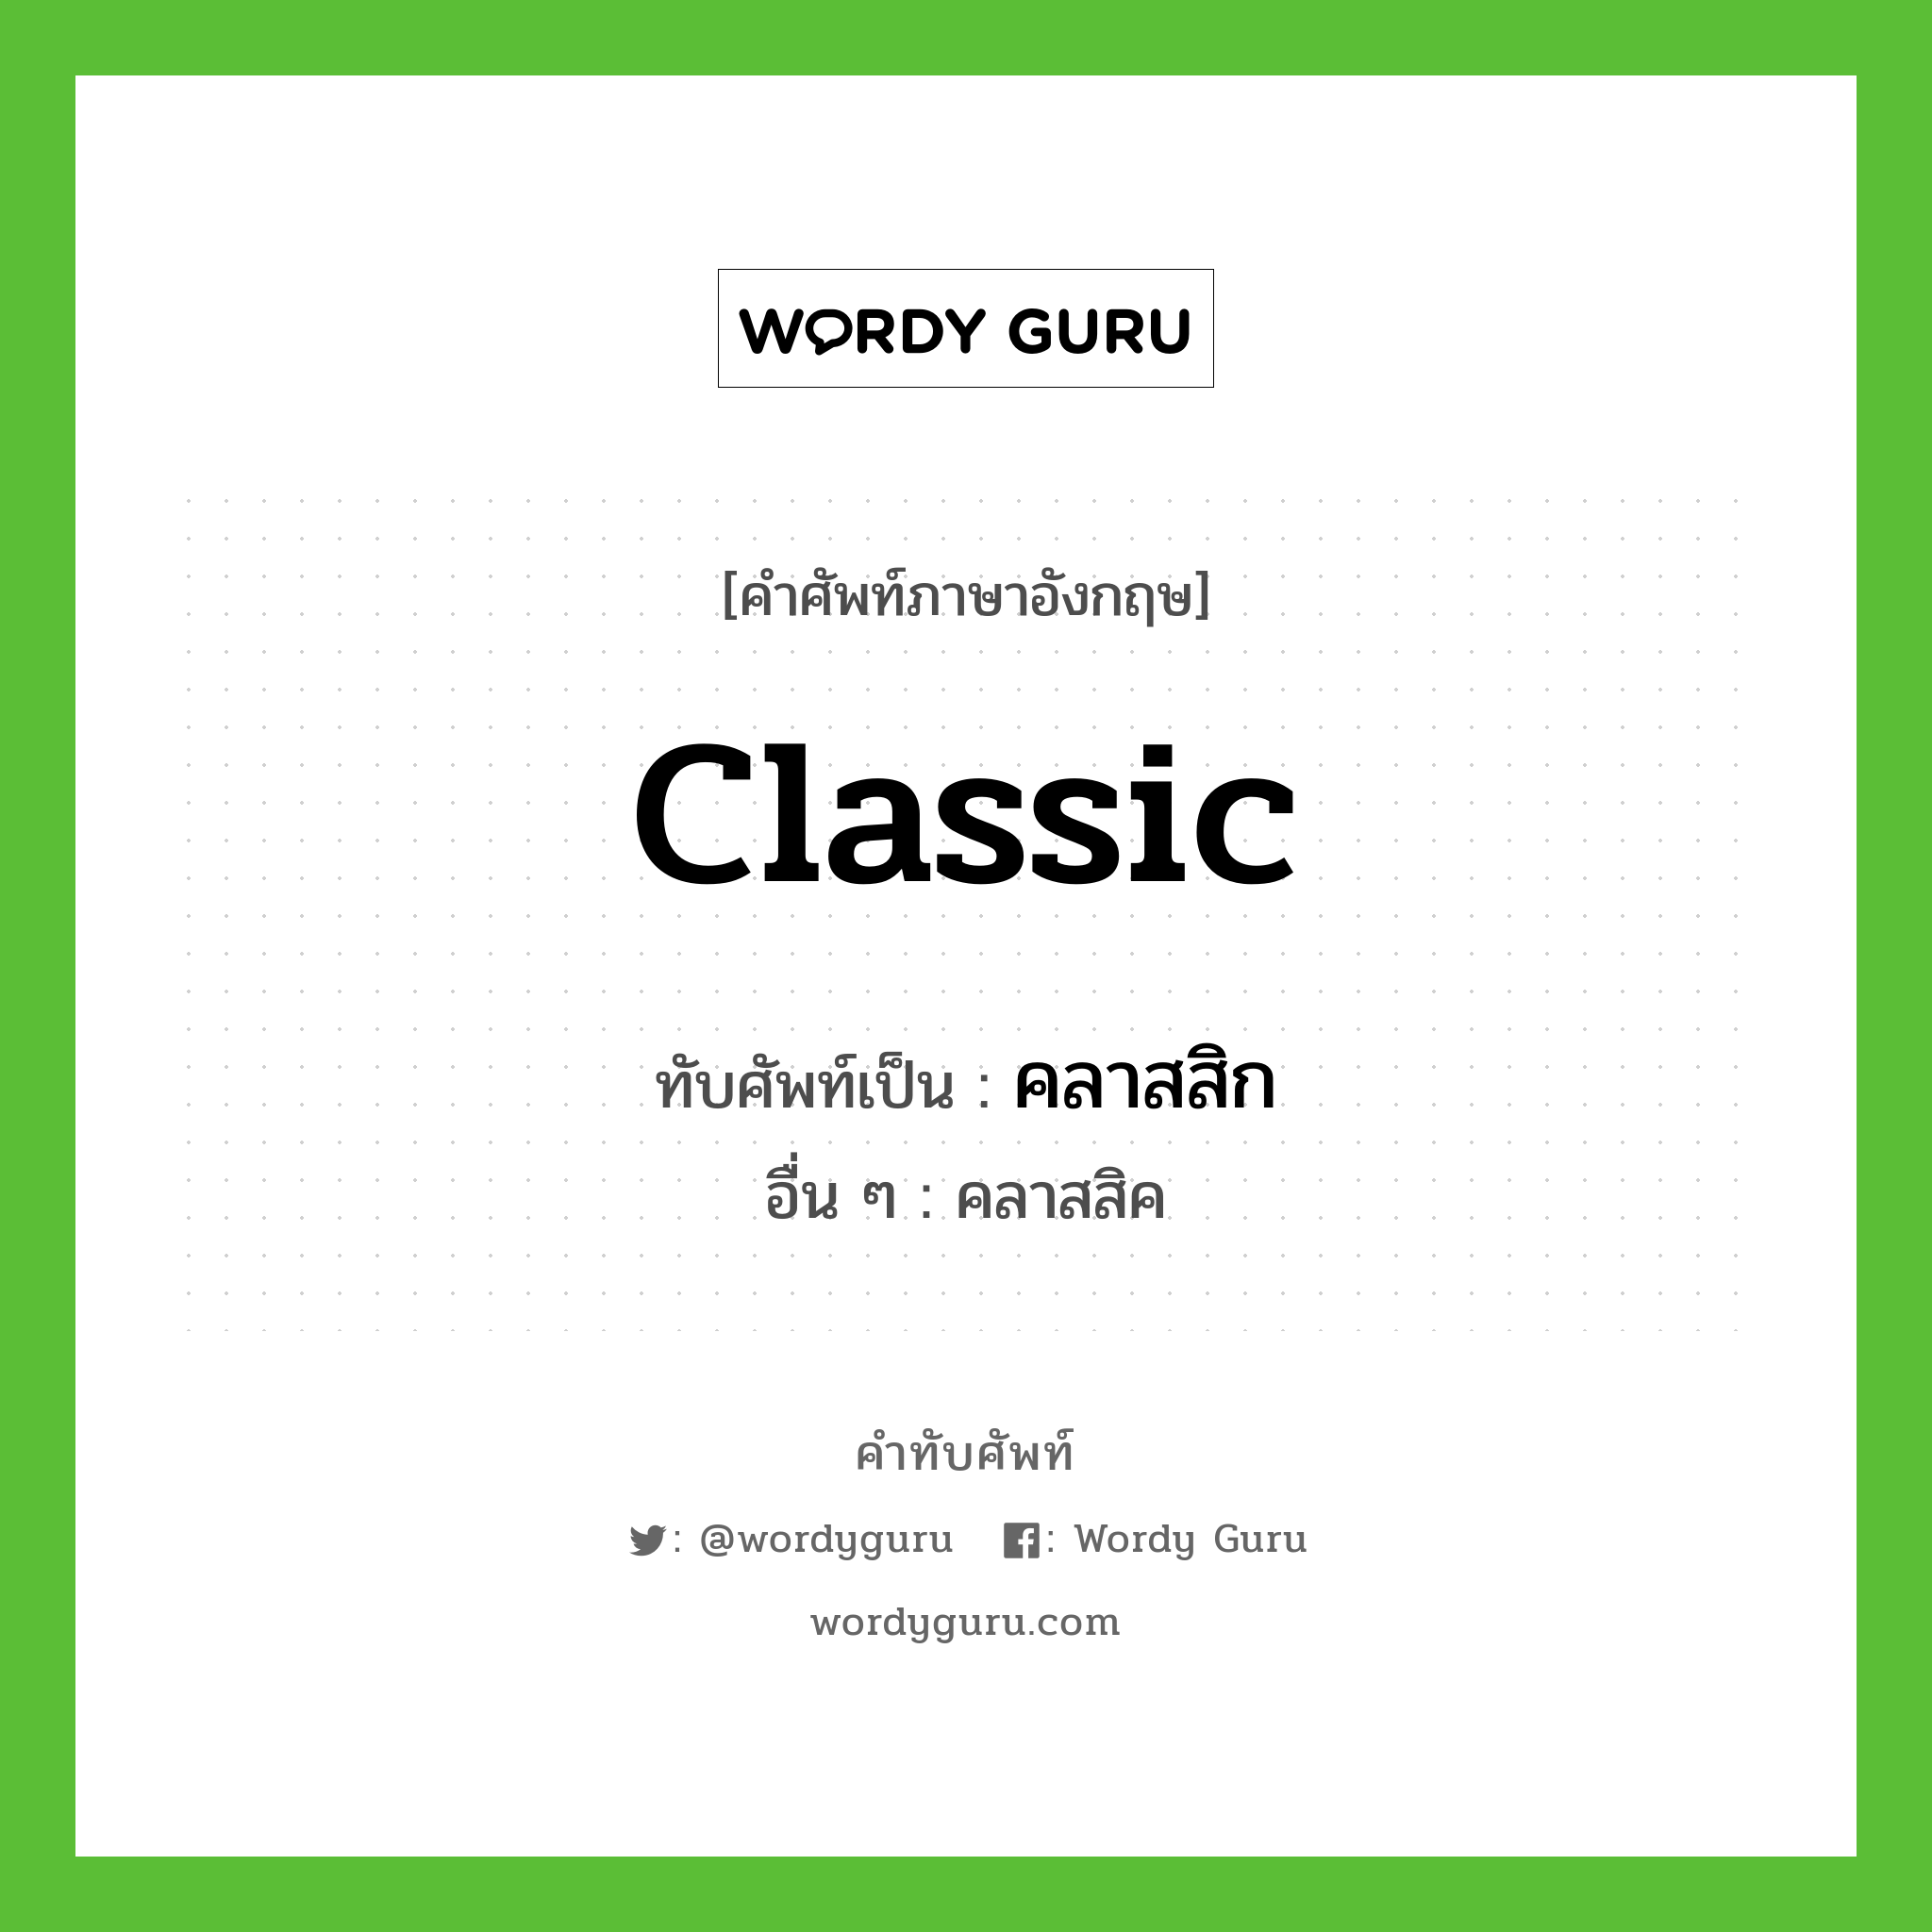 classic เขียนเป็นคำไทยว่าอะไร?, คำศัพท์ภาษาอังกฤษ classic ทับศัพท์เป็น คลาสสิก อื่น ๆ คลาสสิค